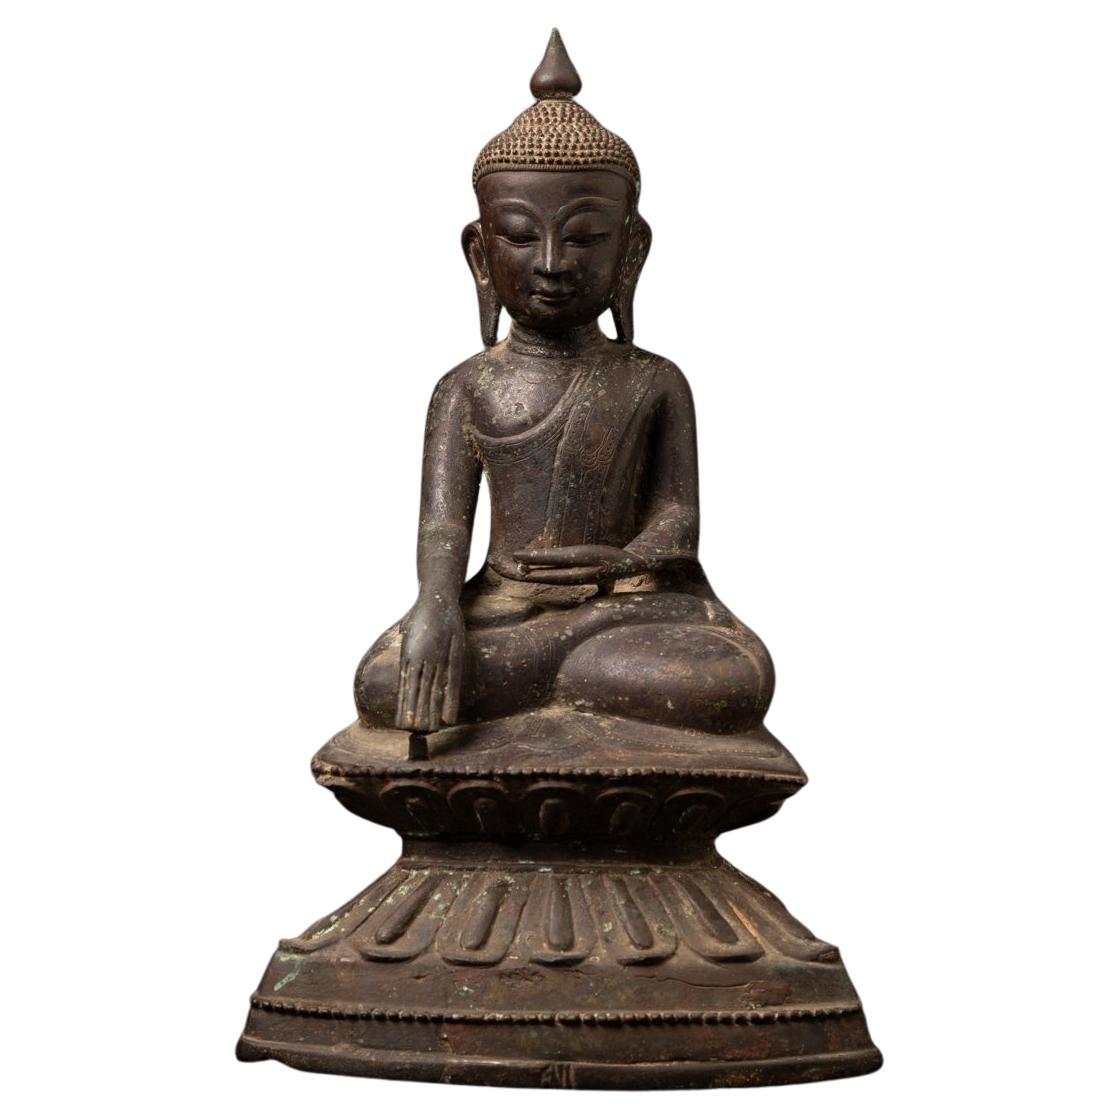 statue de Bouddha birman du 18e siècle en bronze ancien provenant de Birmanie